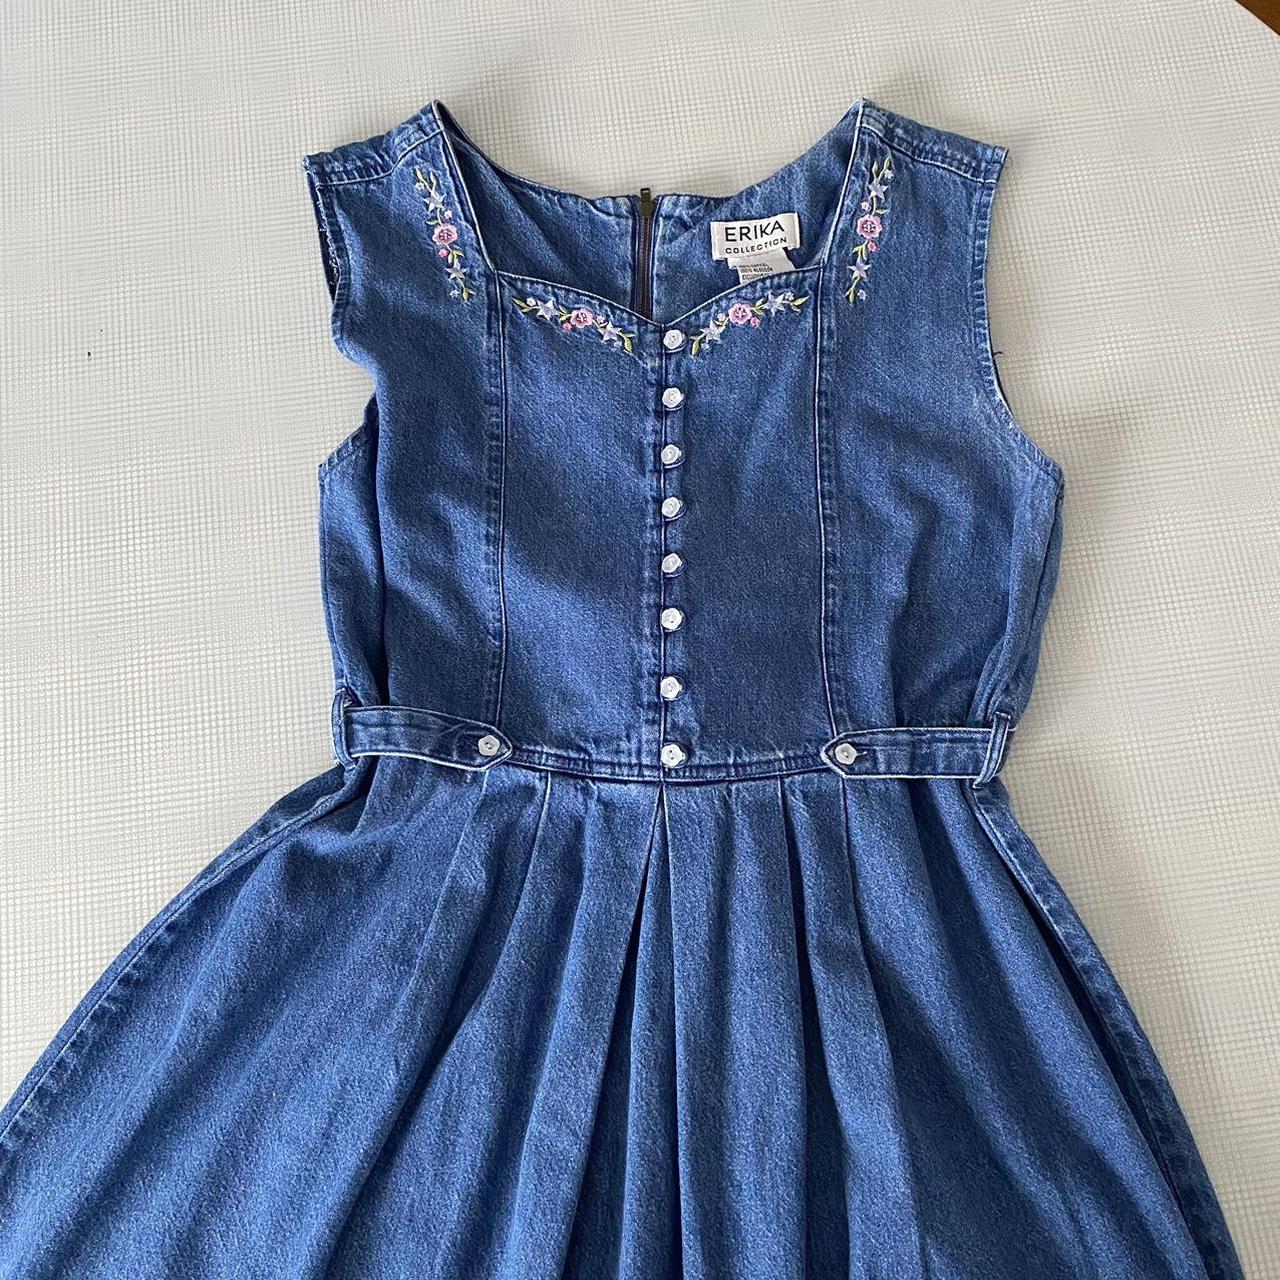 Vintage Denim Dress Erika collection Size M 100%... - Depop